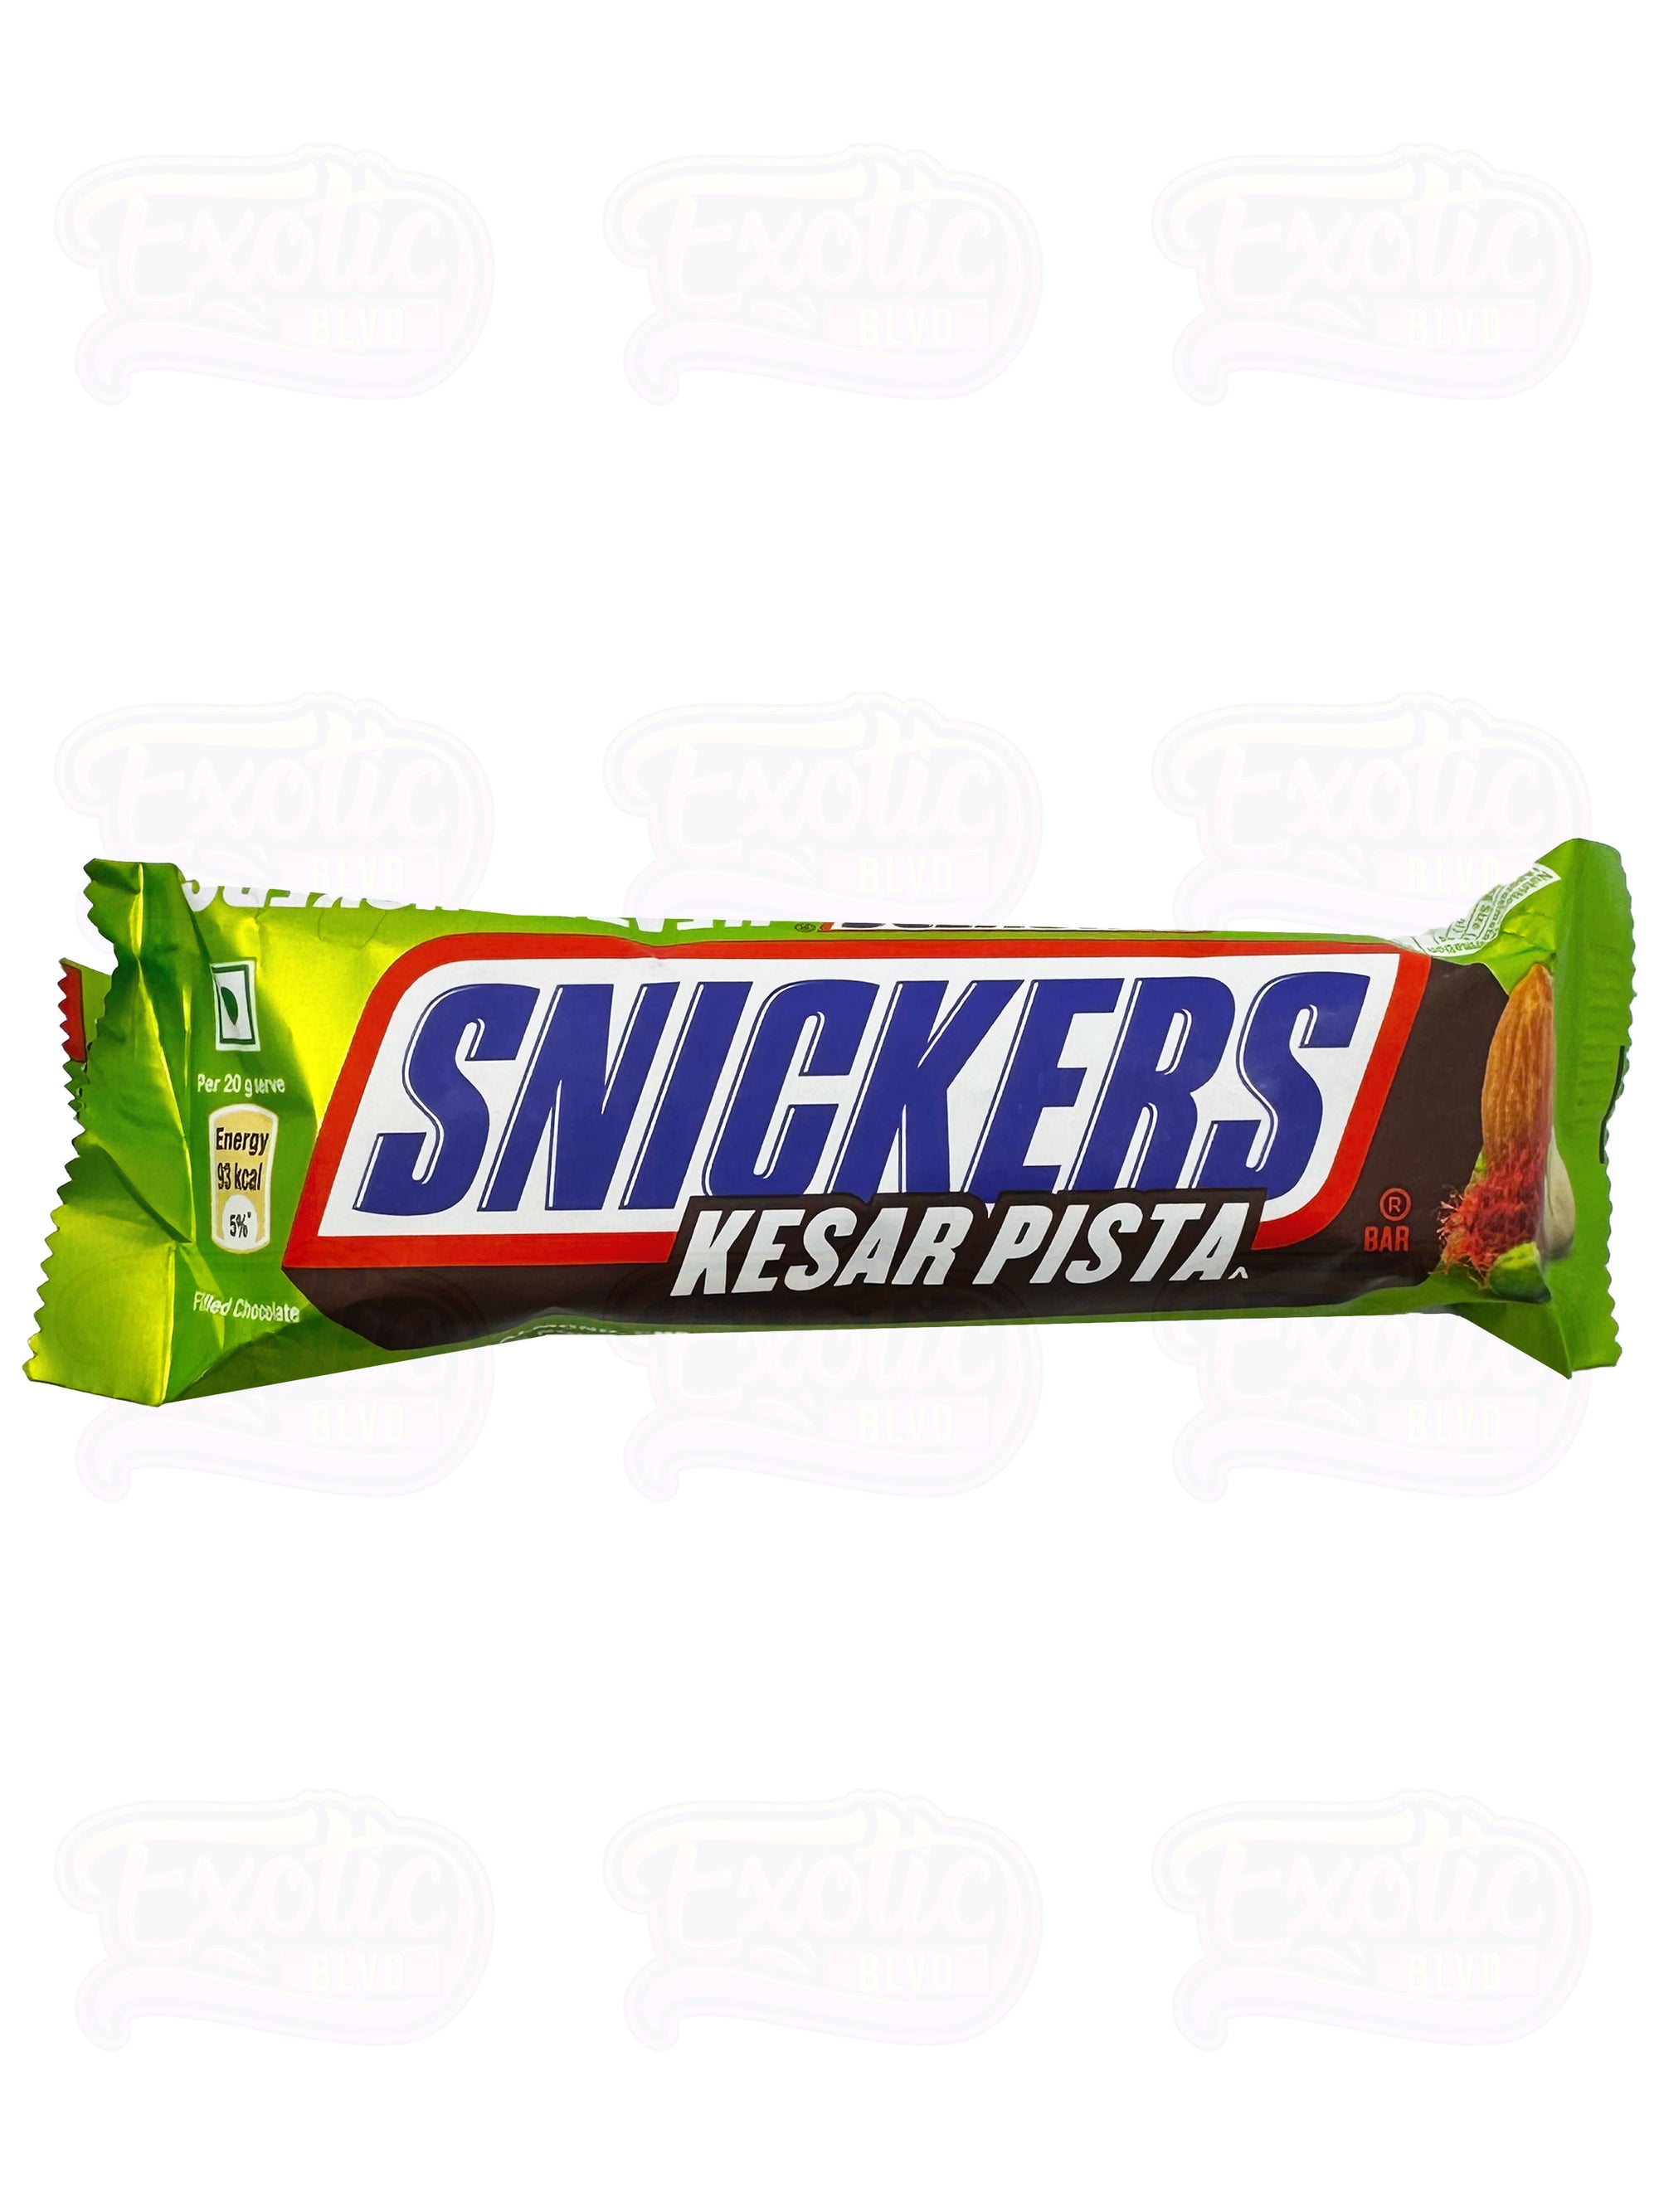 Snickers Kesar Pista (Pistachio)